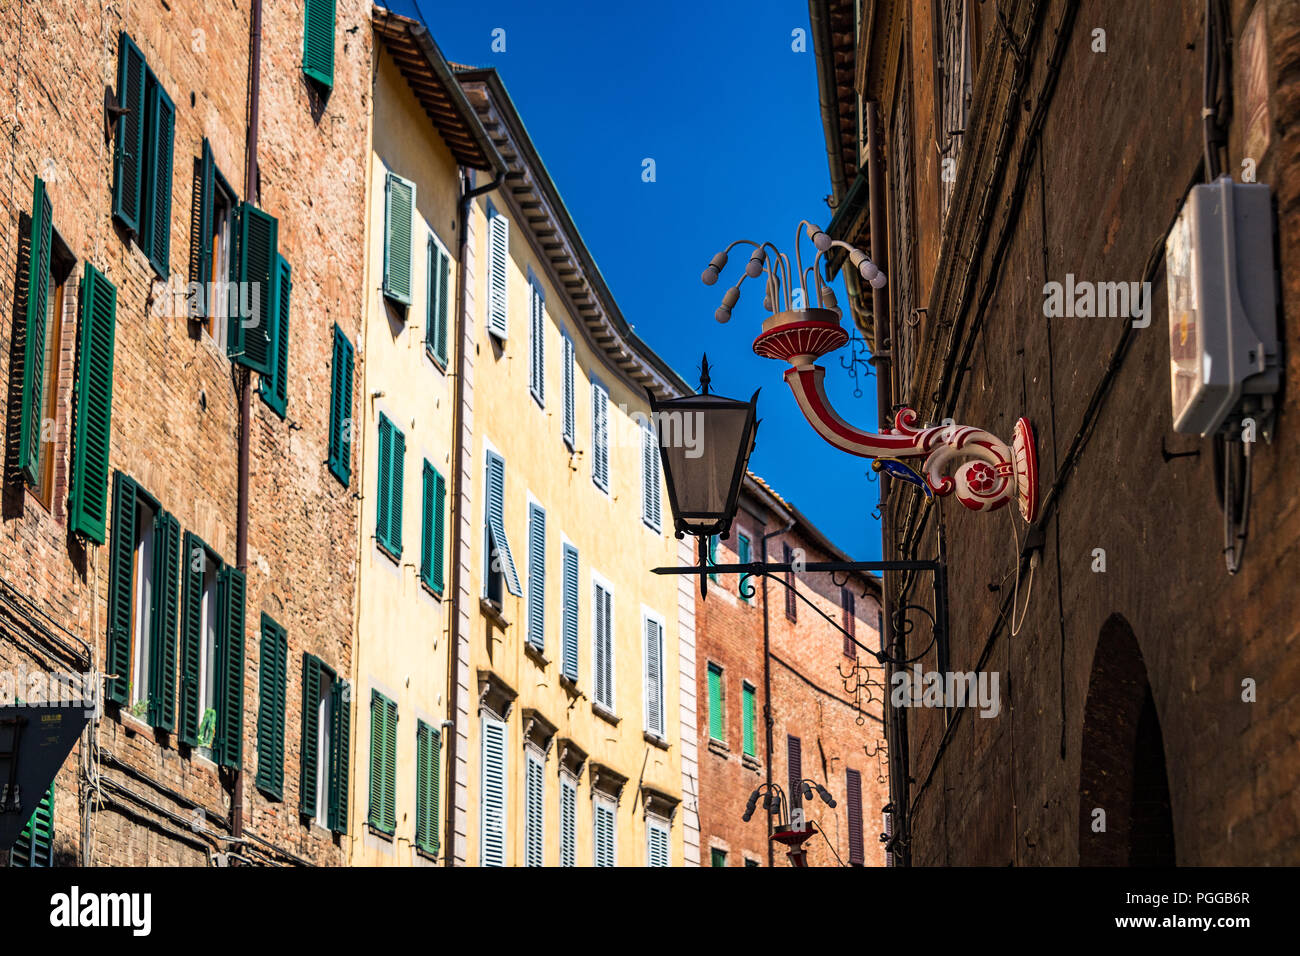 Eine dekorative Lampe, die in der Stadt Seila, Toskana, Italien, verbreitet ist. Das historische Zentrum von Siena wurde von der UNESCO zum Weltkulturerbe erklärt Stockfoto